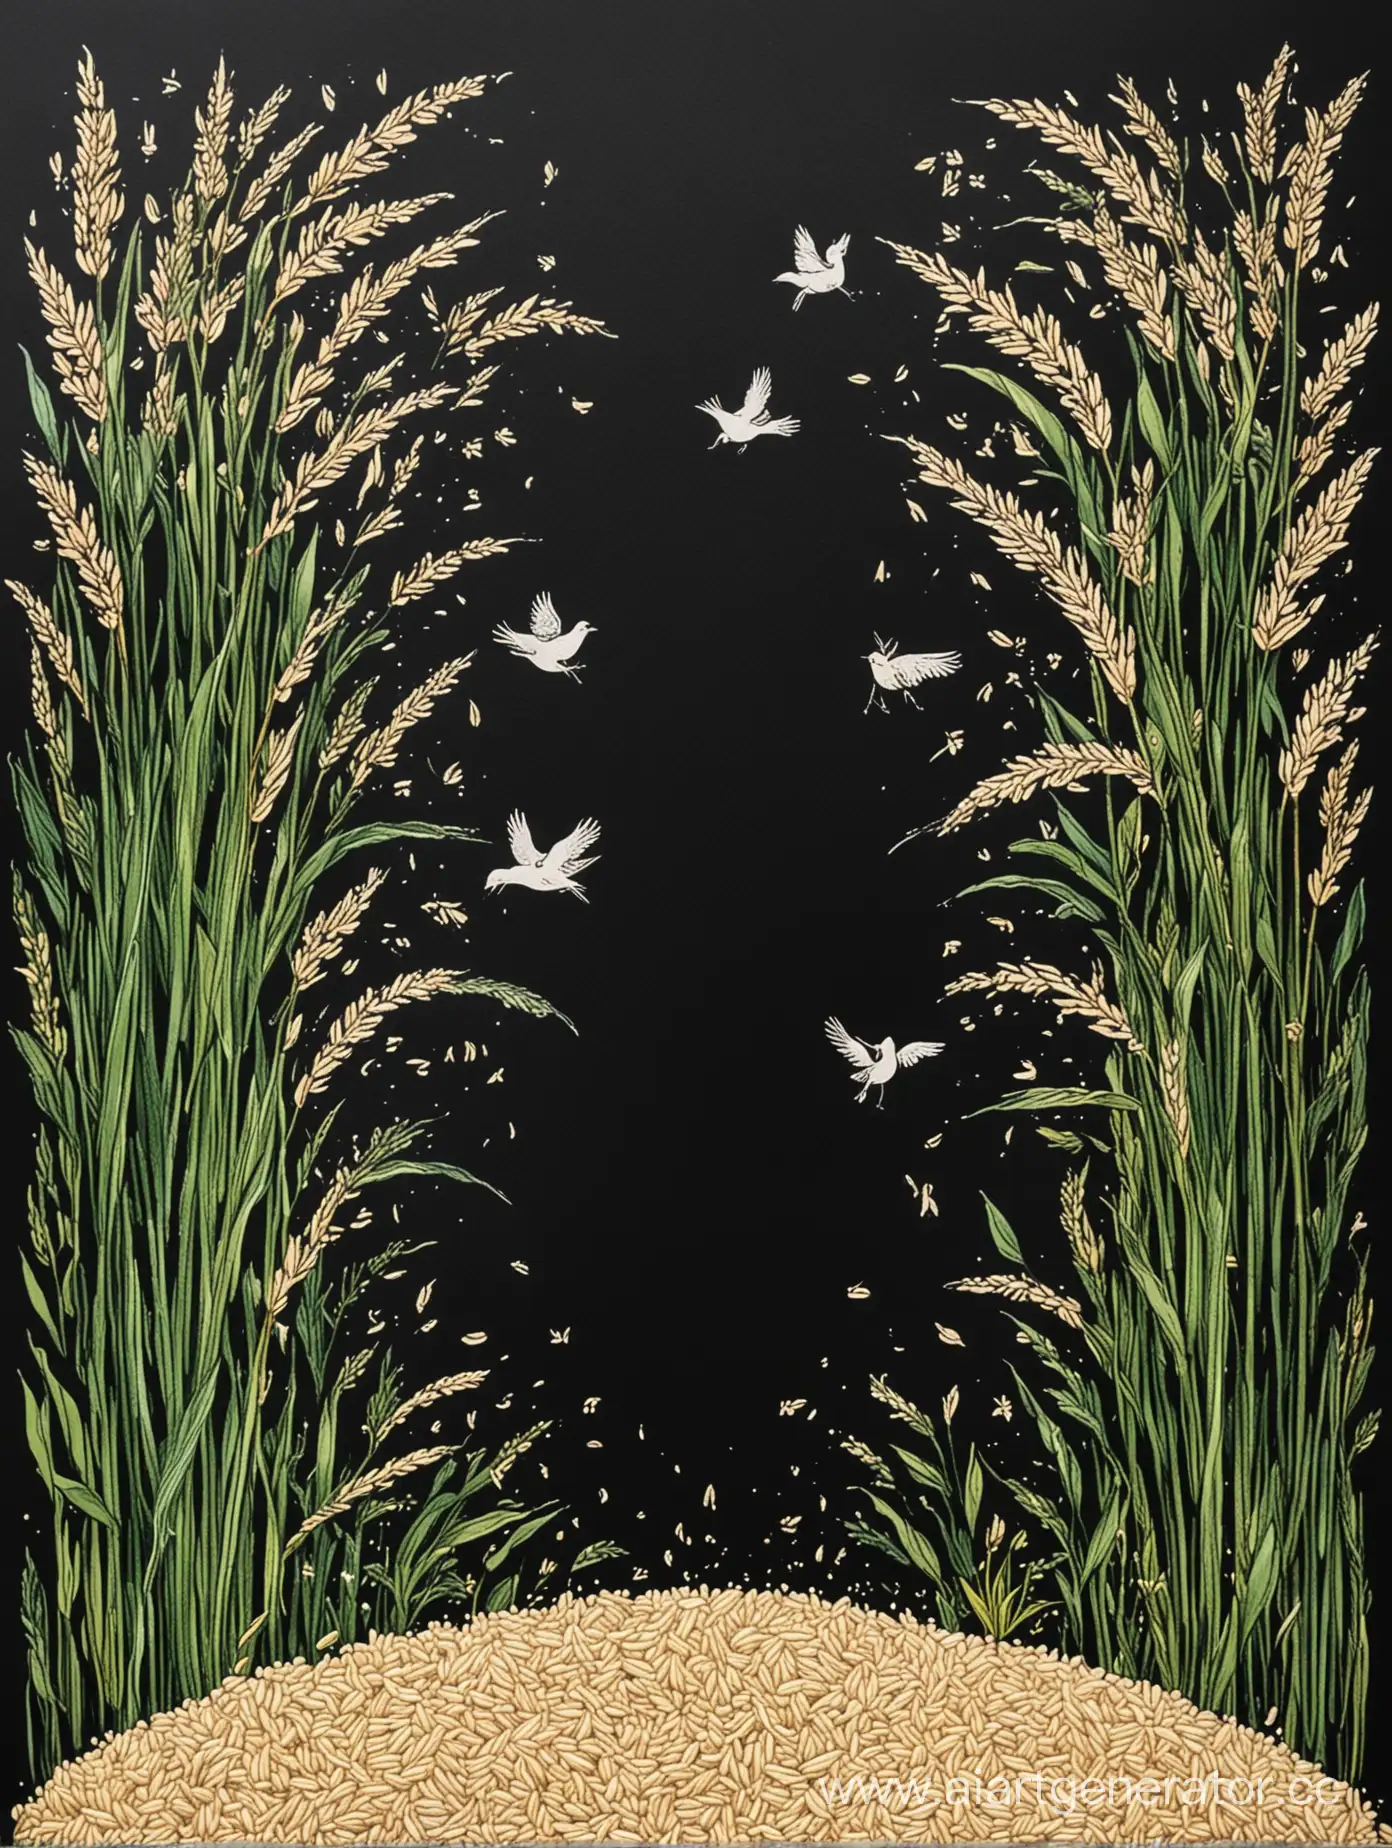 нарисуй афишу 
На черном фоне афиши изобразить много риса, из которого вырастает маленький проросток.
Вокруг зерна риса можно изобразить птички из рисинок, как будто к ним притягивает рис.

